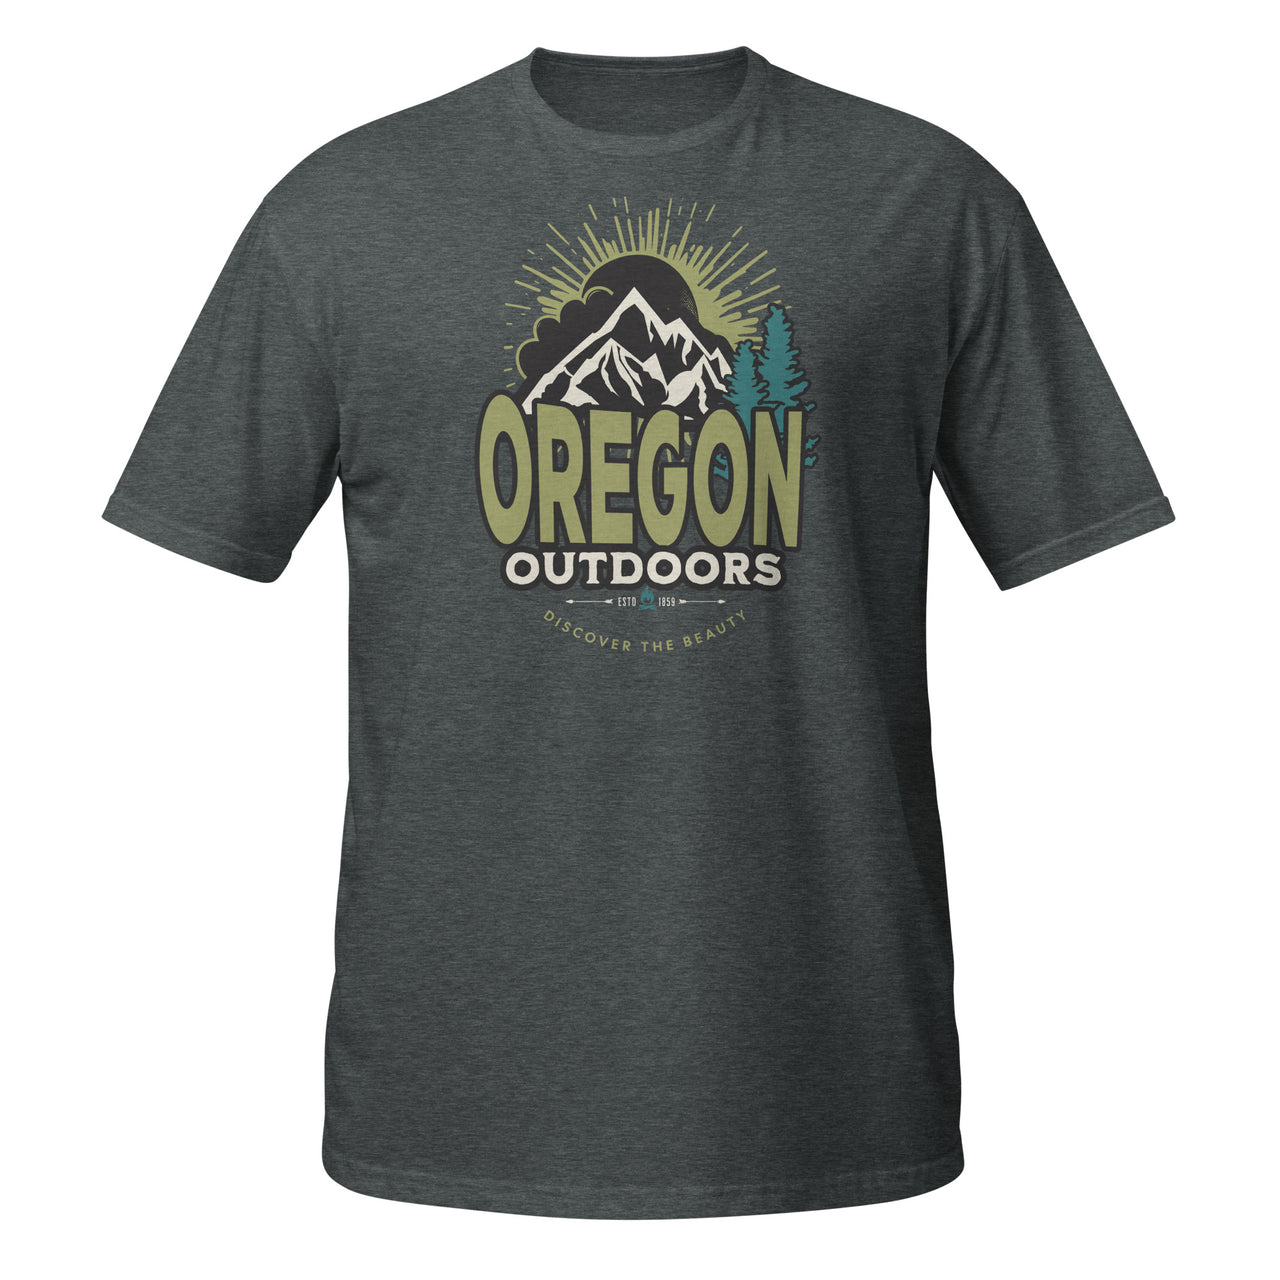 Oregon Outdoors - Short-Sleeve Unisex T-Shirt